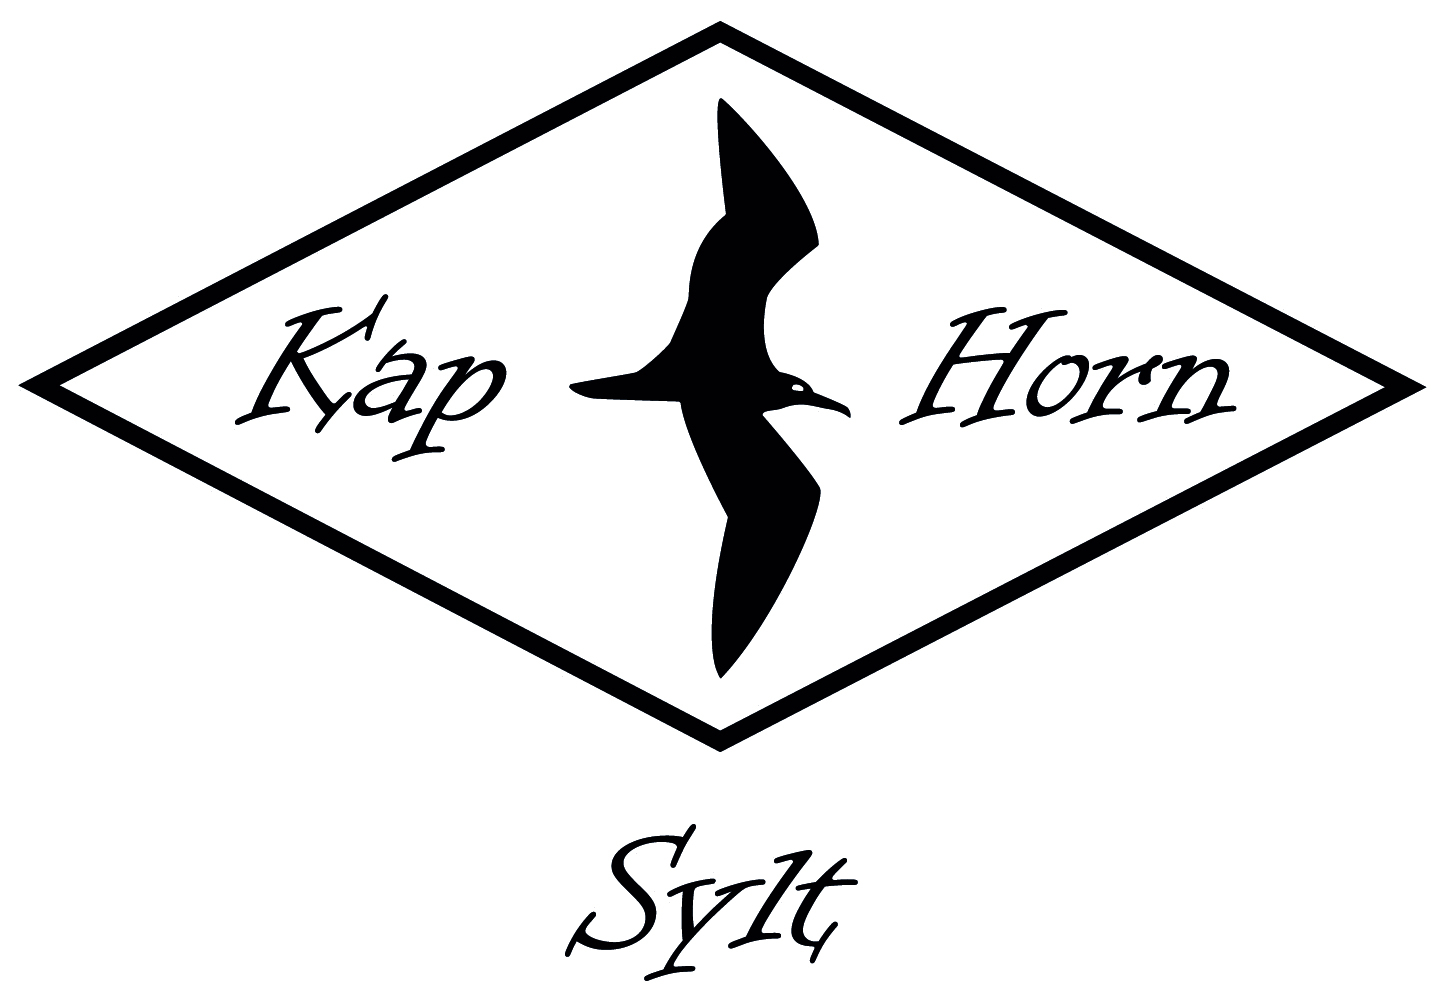 Kap-Horn Sylt Online-Shop